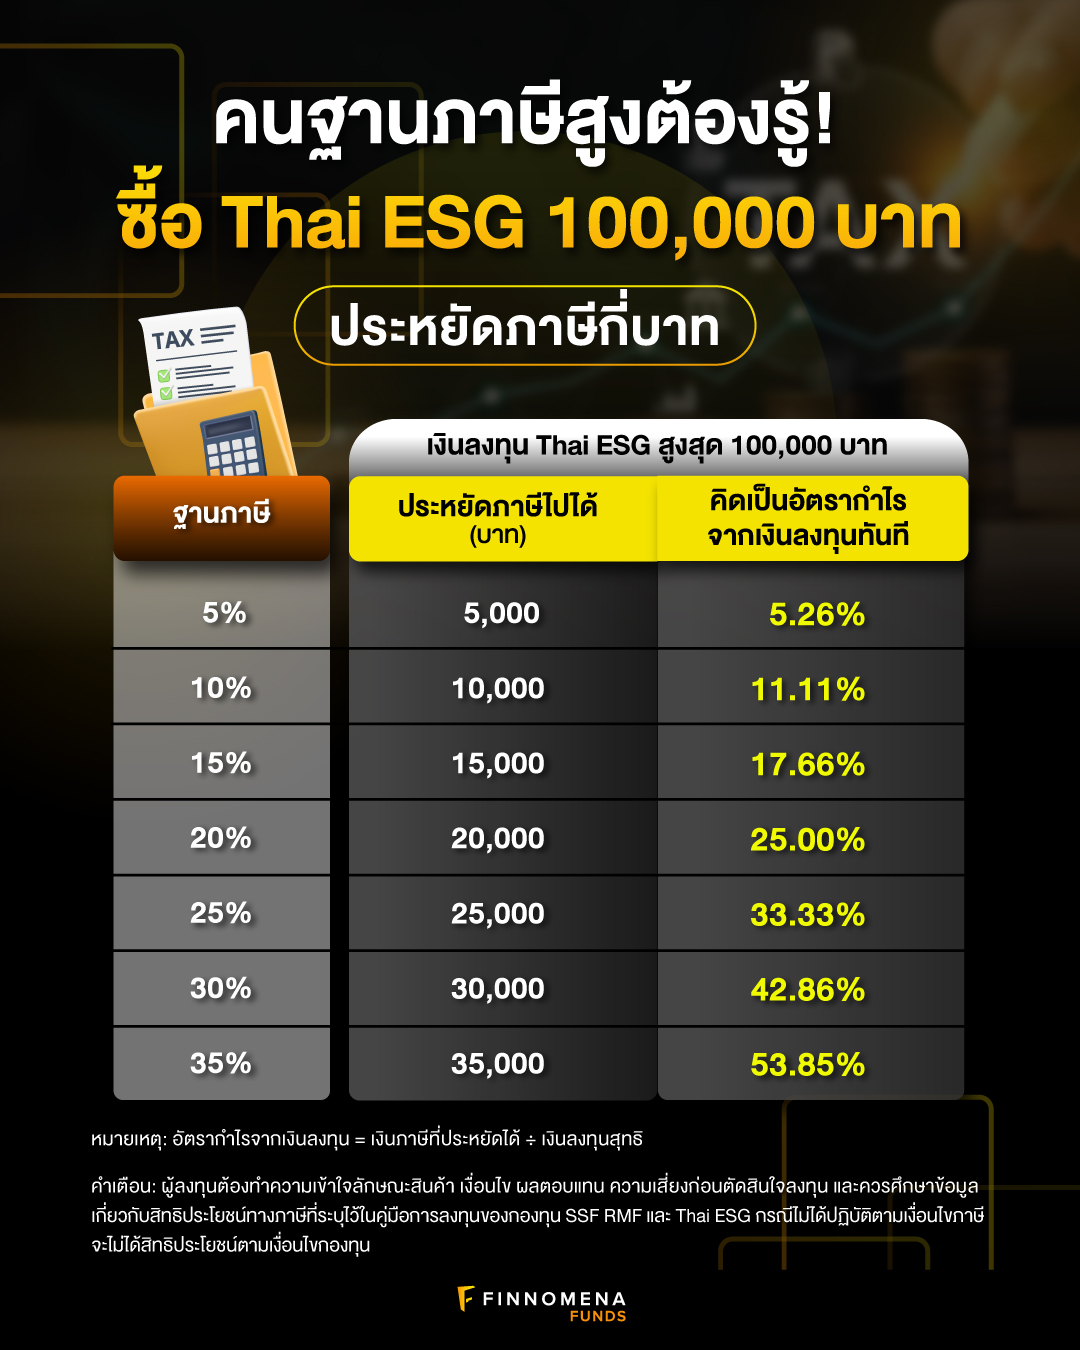 ซื้อ Thai ESG ประหยัดภาษีกี่บาท